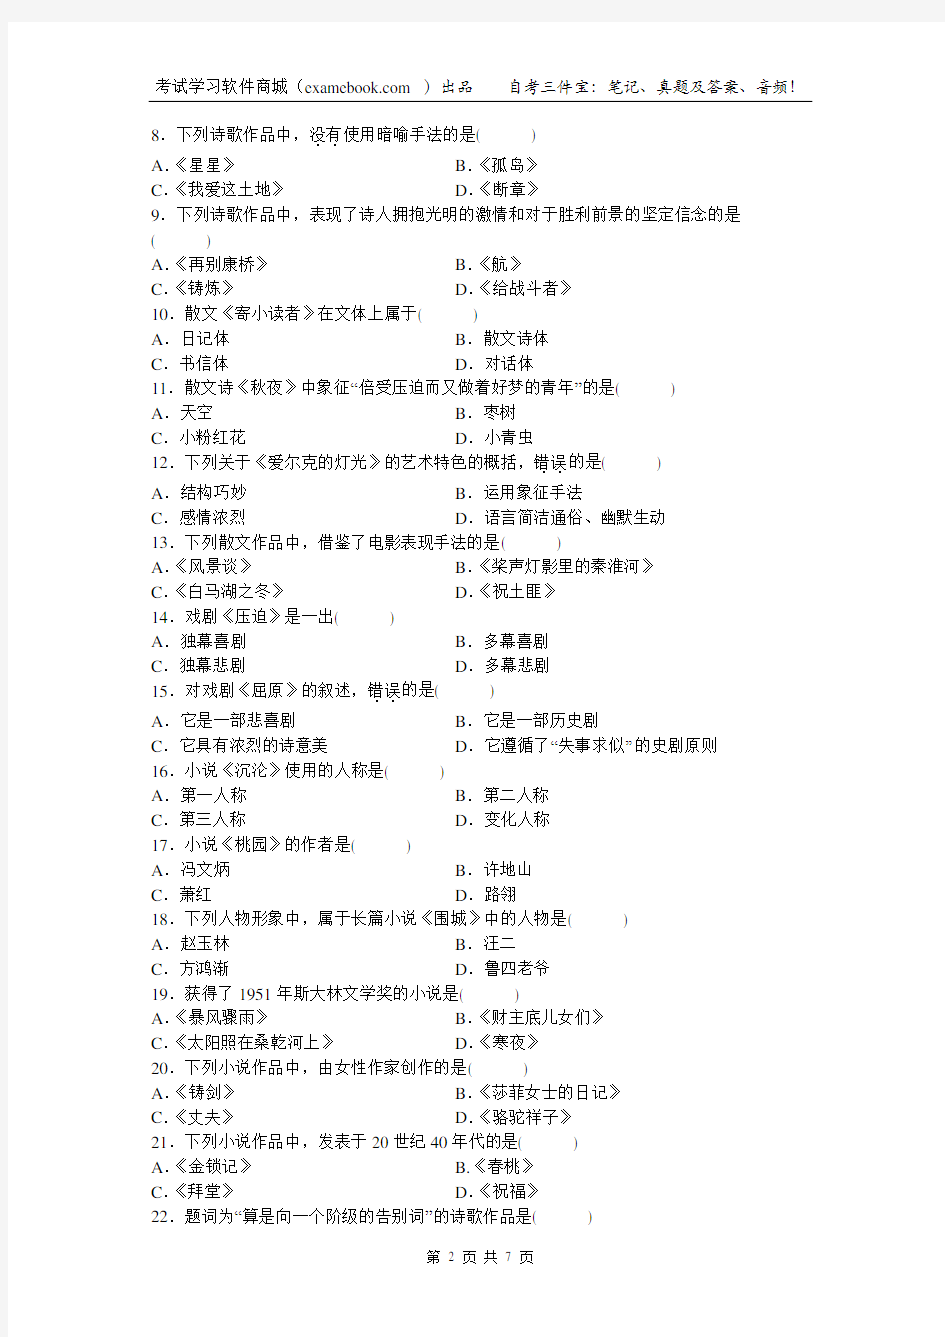 自考00530中国现代文学作品选2010年07月真题和答案